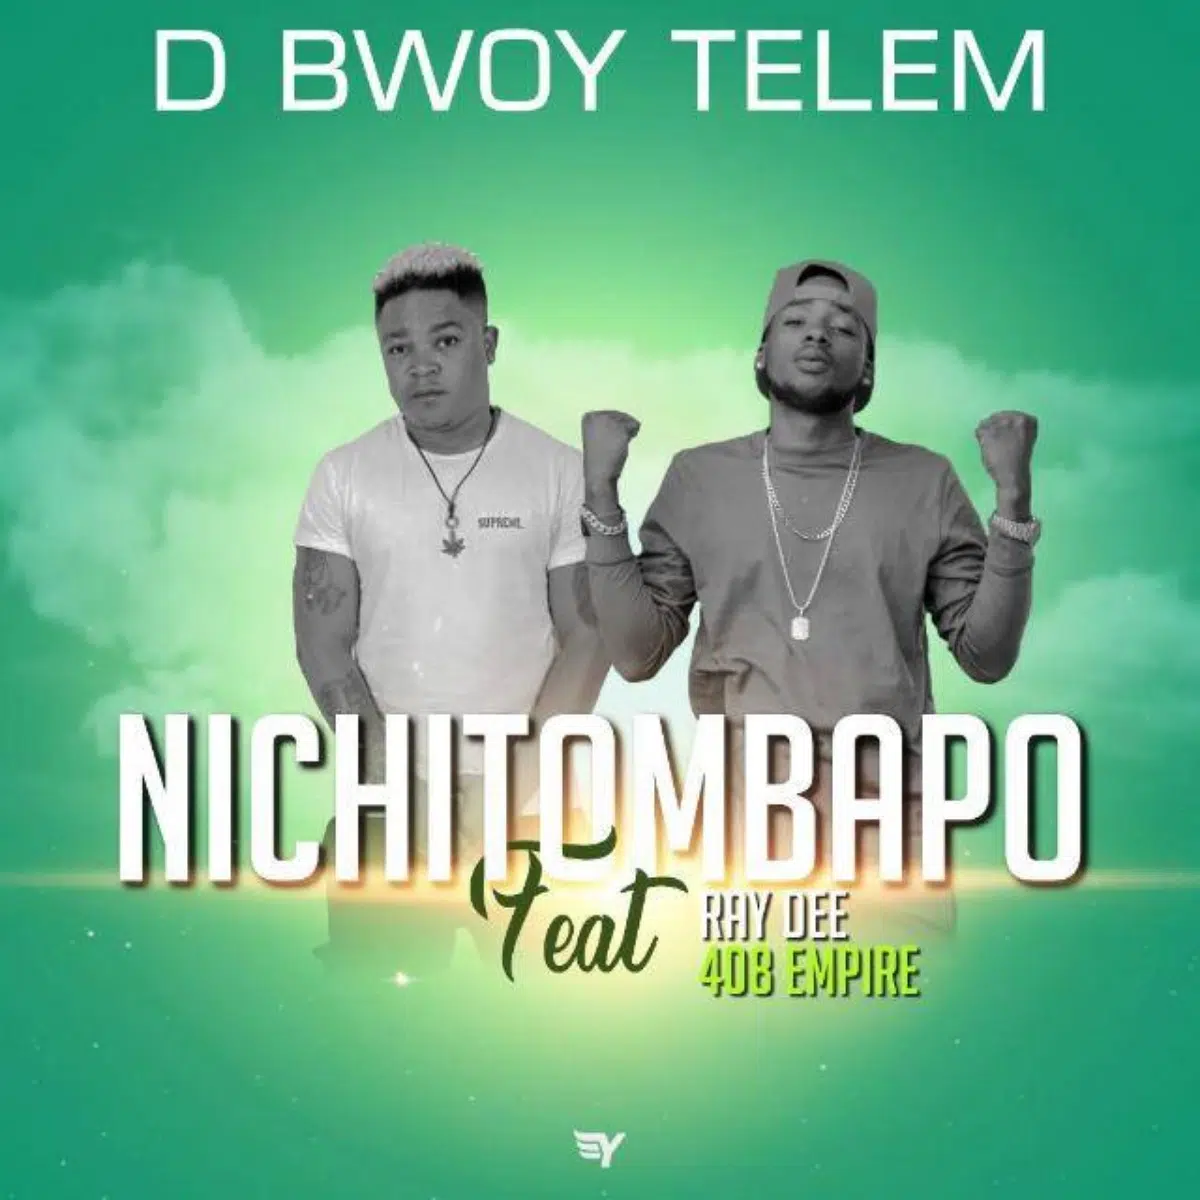 DOWNLOAD: D Bwoy Telem Feat Ray Dee – “Nichitombapo” Mp3